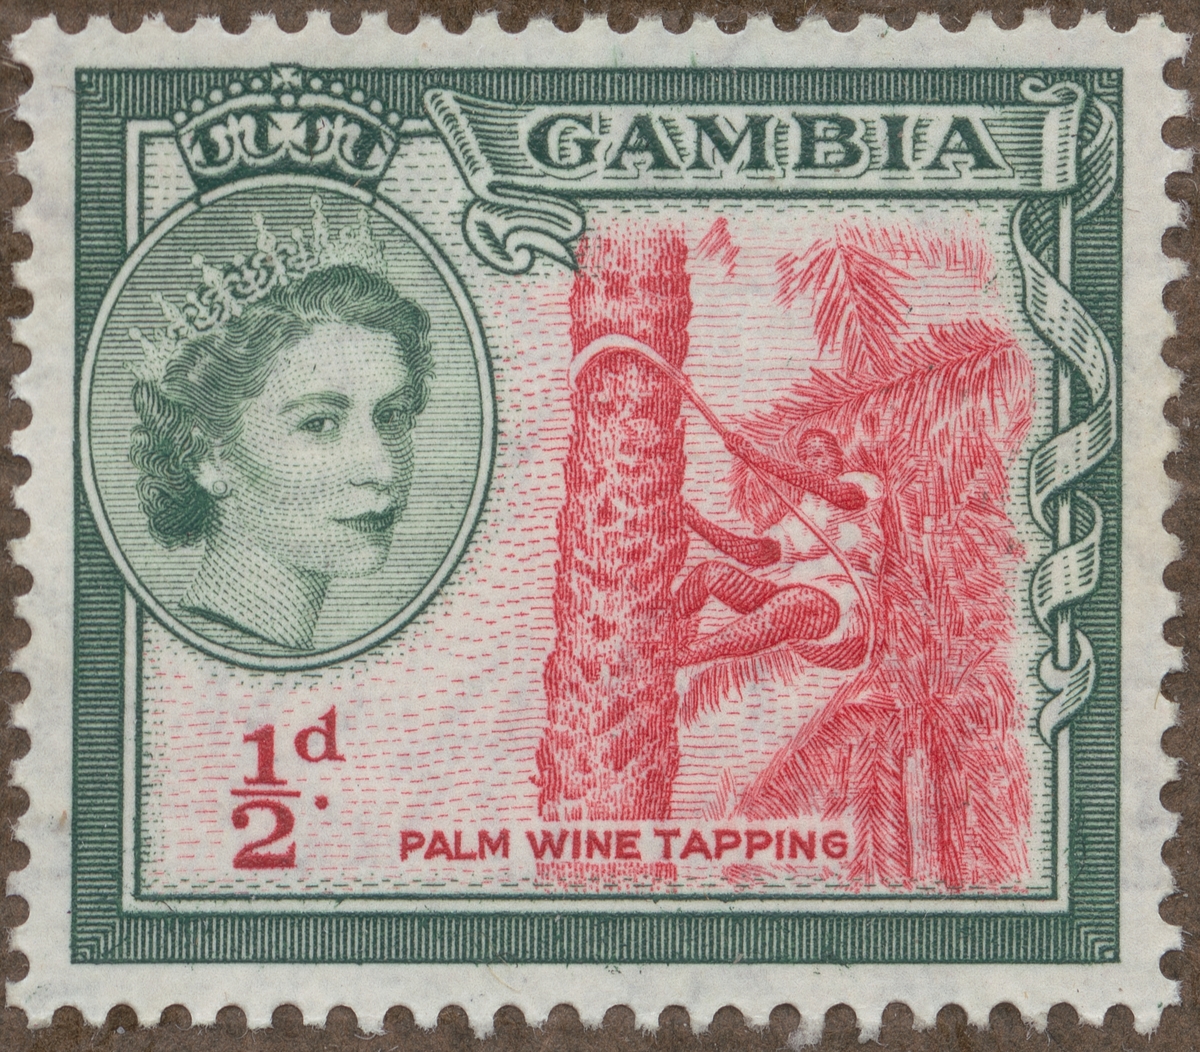 Frimärke ur Gösta Bodmans filatelistiska motivsamling, påbörjad 1950.
Frimärke från Gambia, 1953. Motiv av tappning av palmvin. T.v. Drottning Elizabeth II.